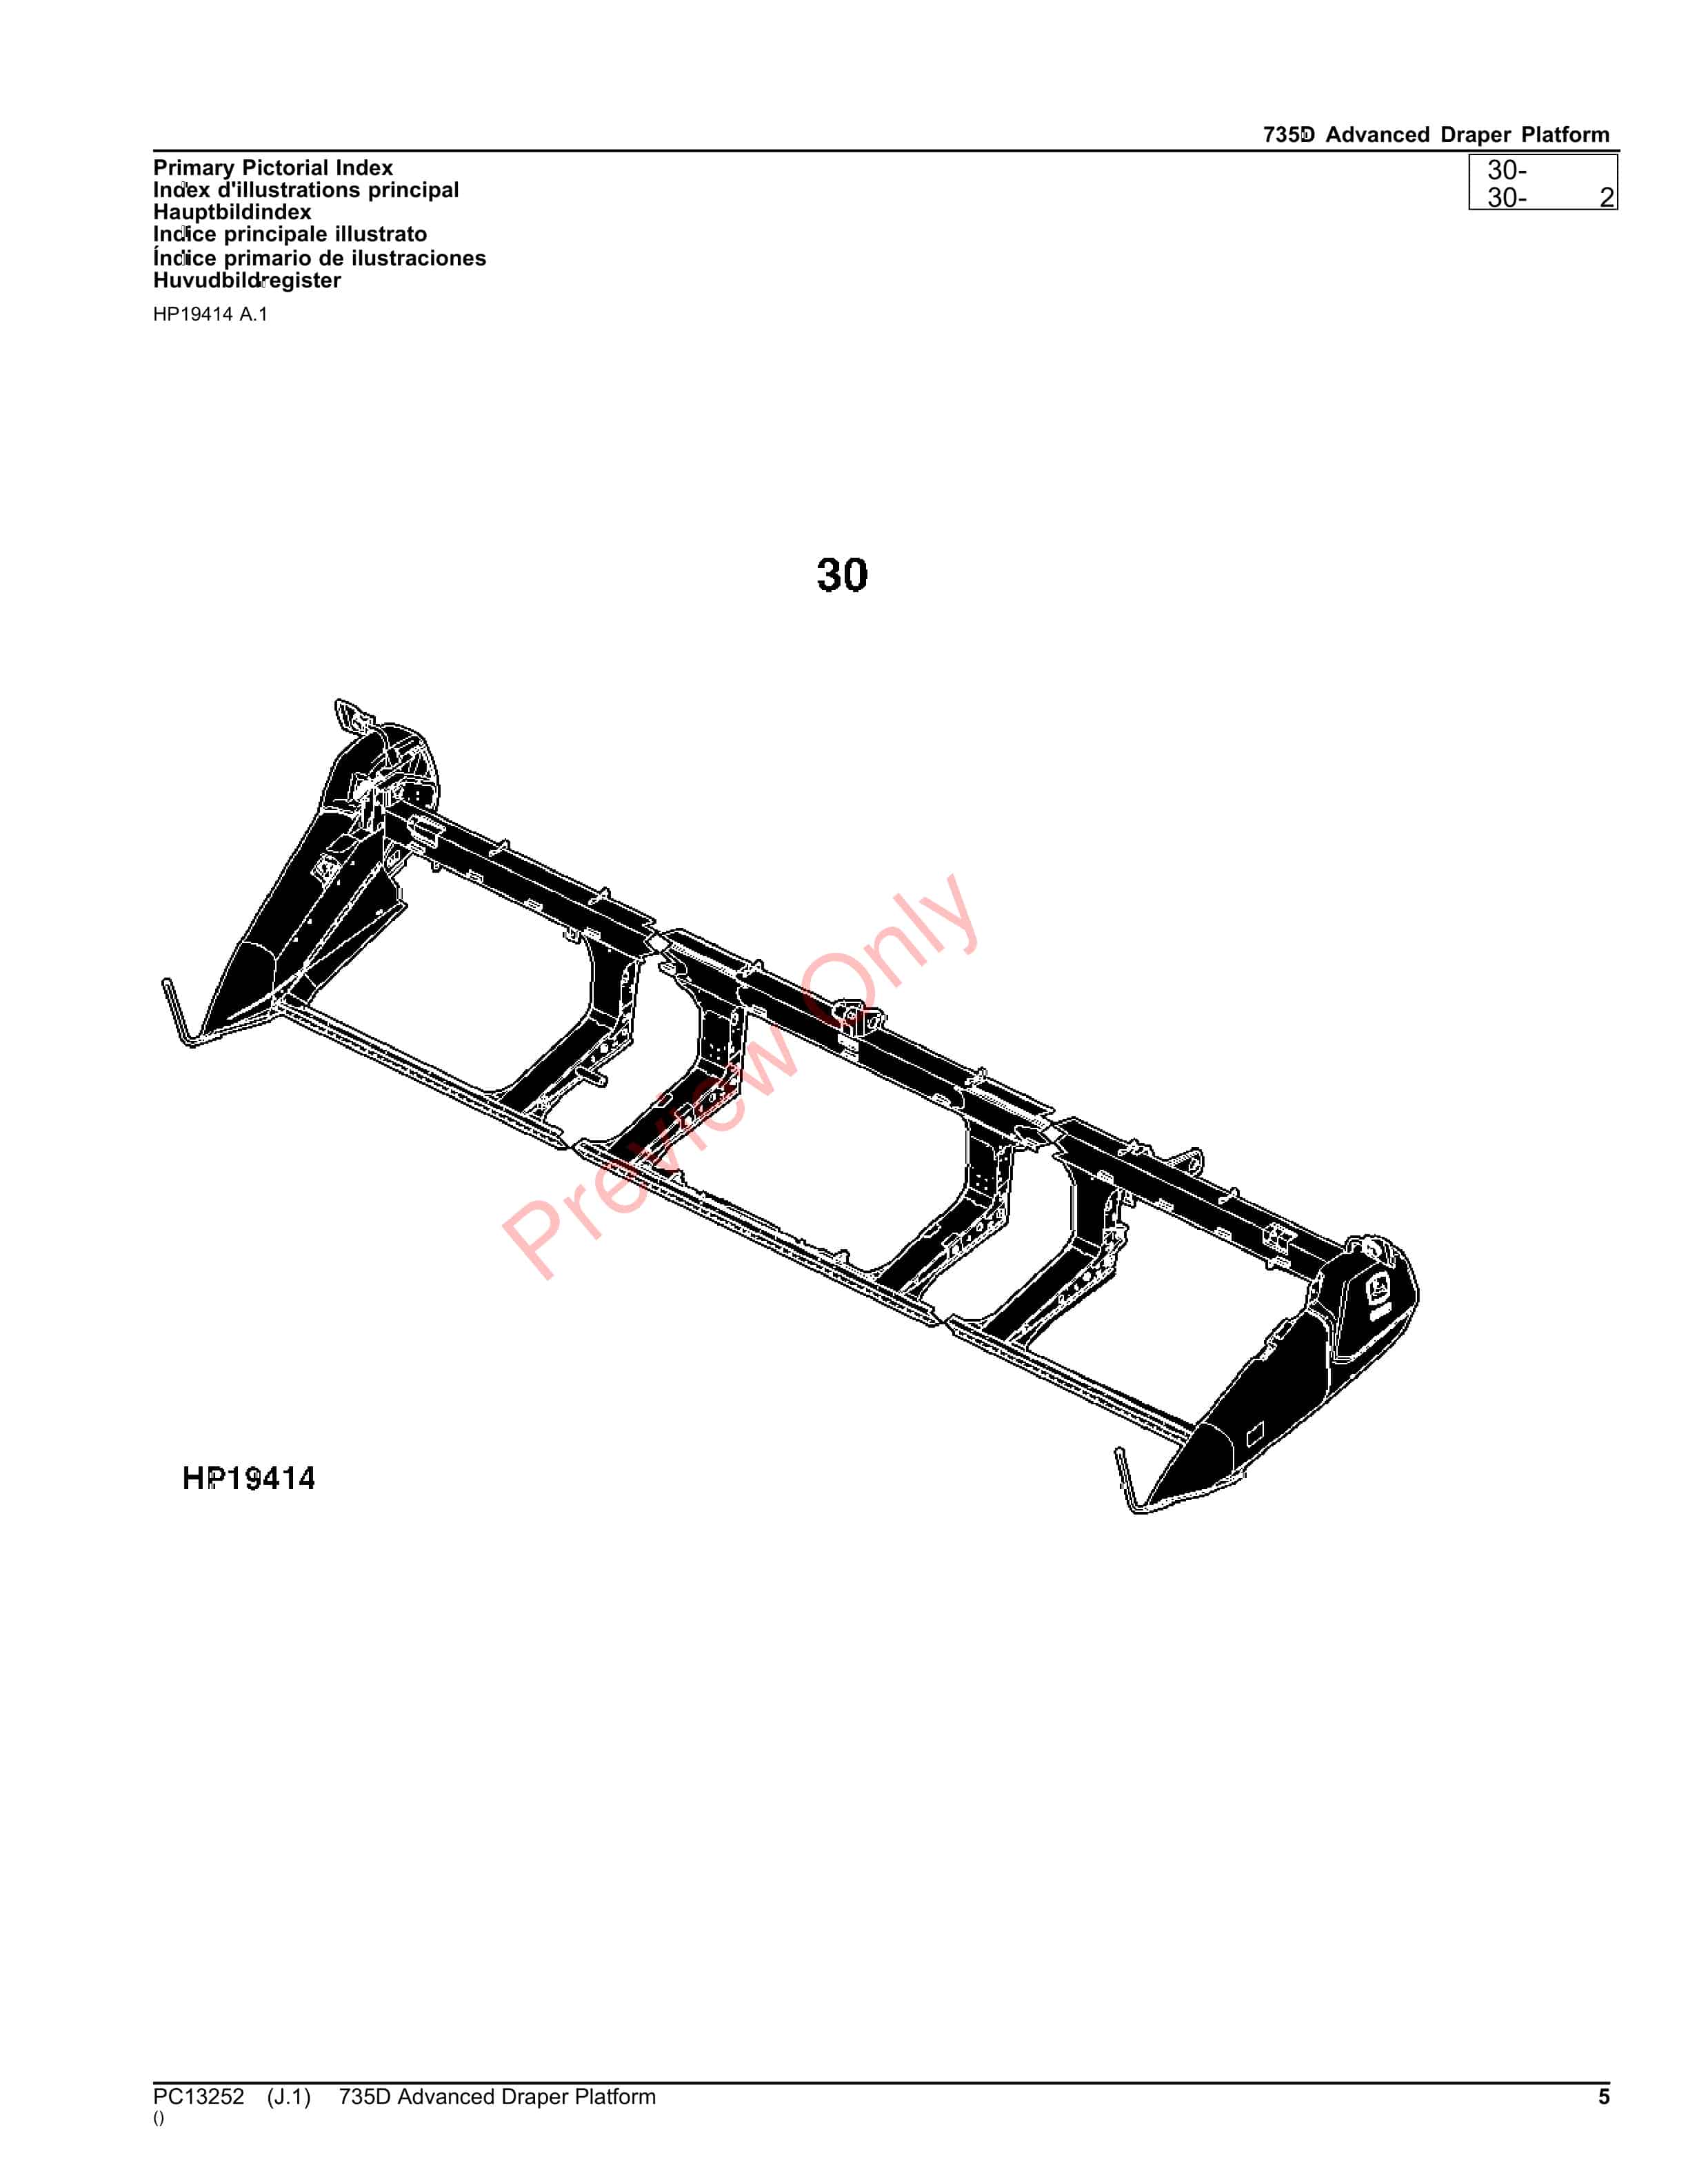 John Deere 735D Advanced Draper Platform Parts Catalog PC13252 26OCT23-5